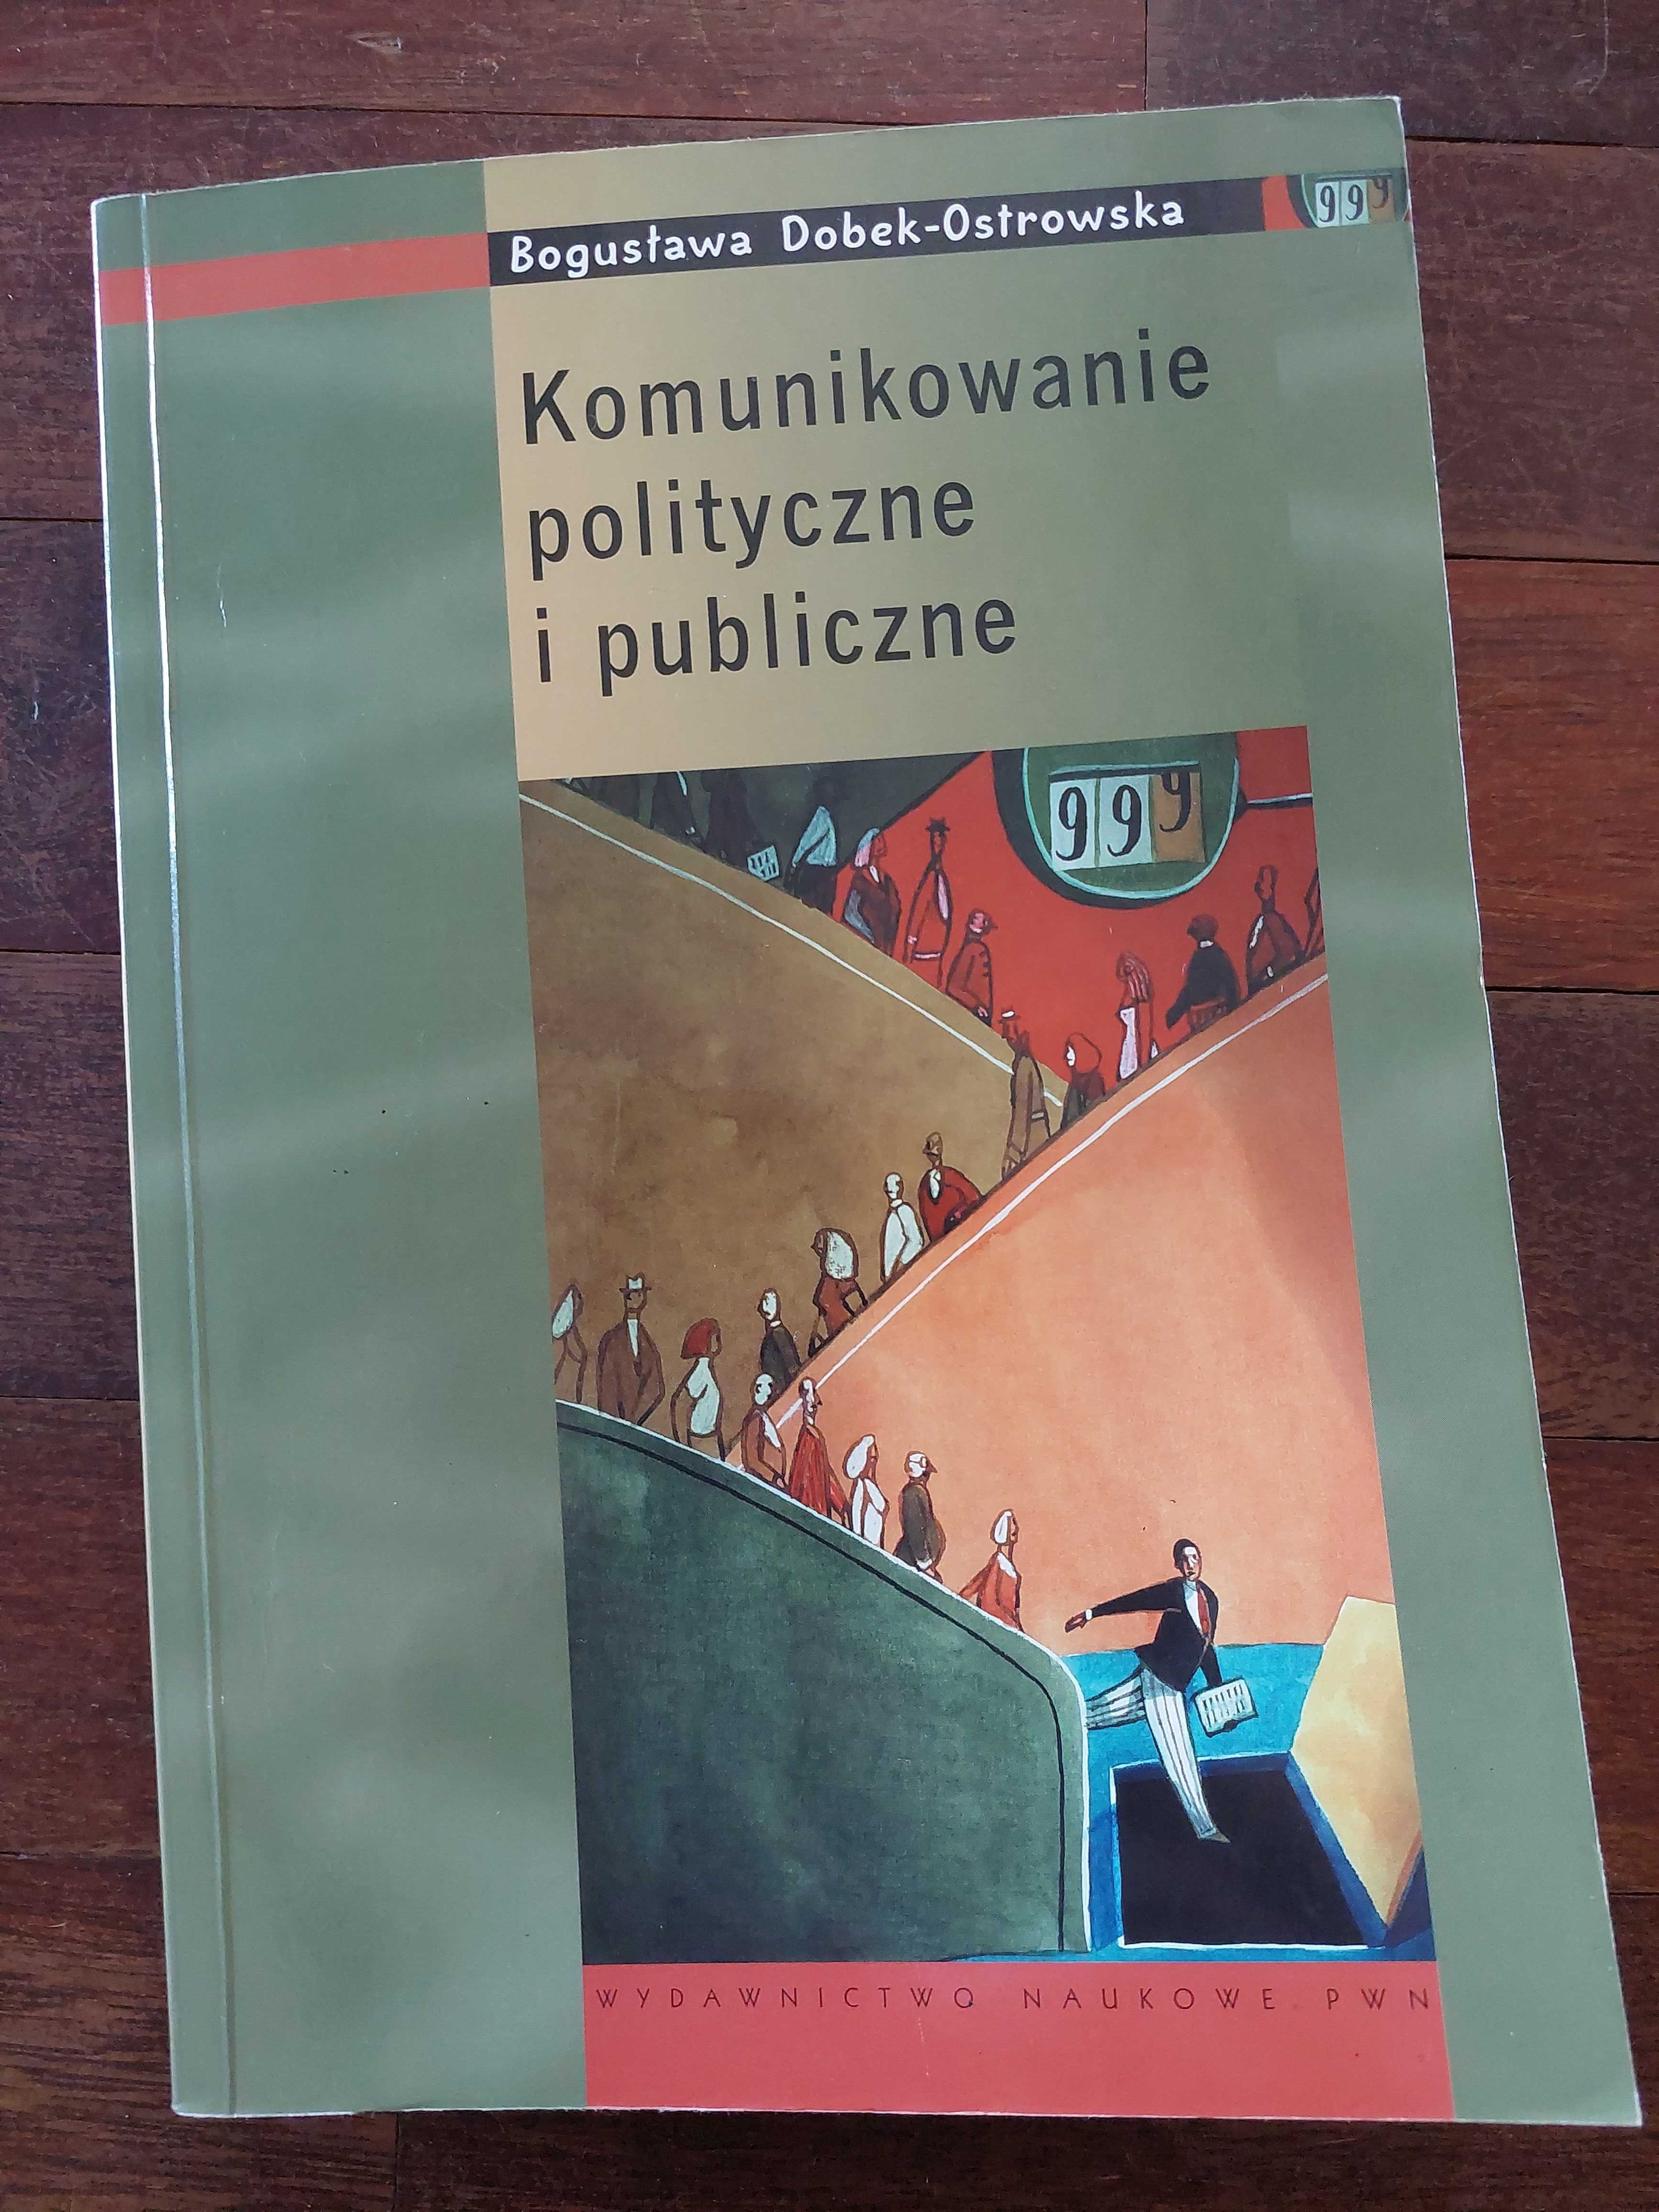 Książka "Komunikowanie polityczne i publiczne"